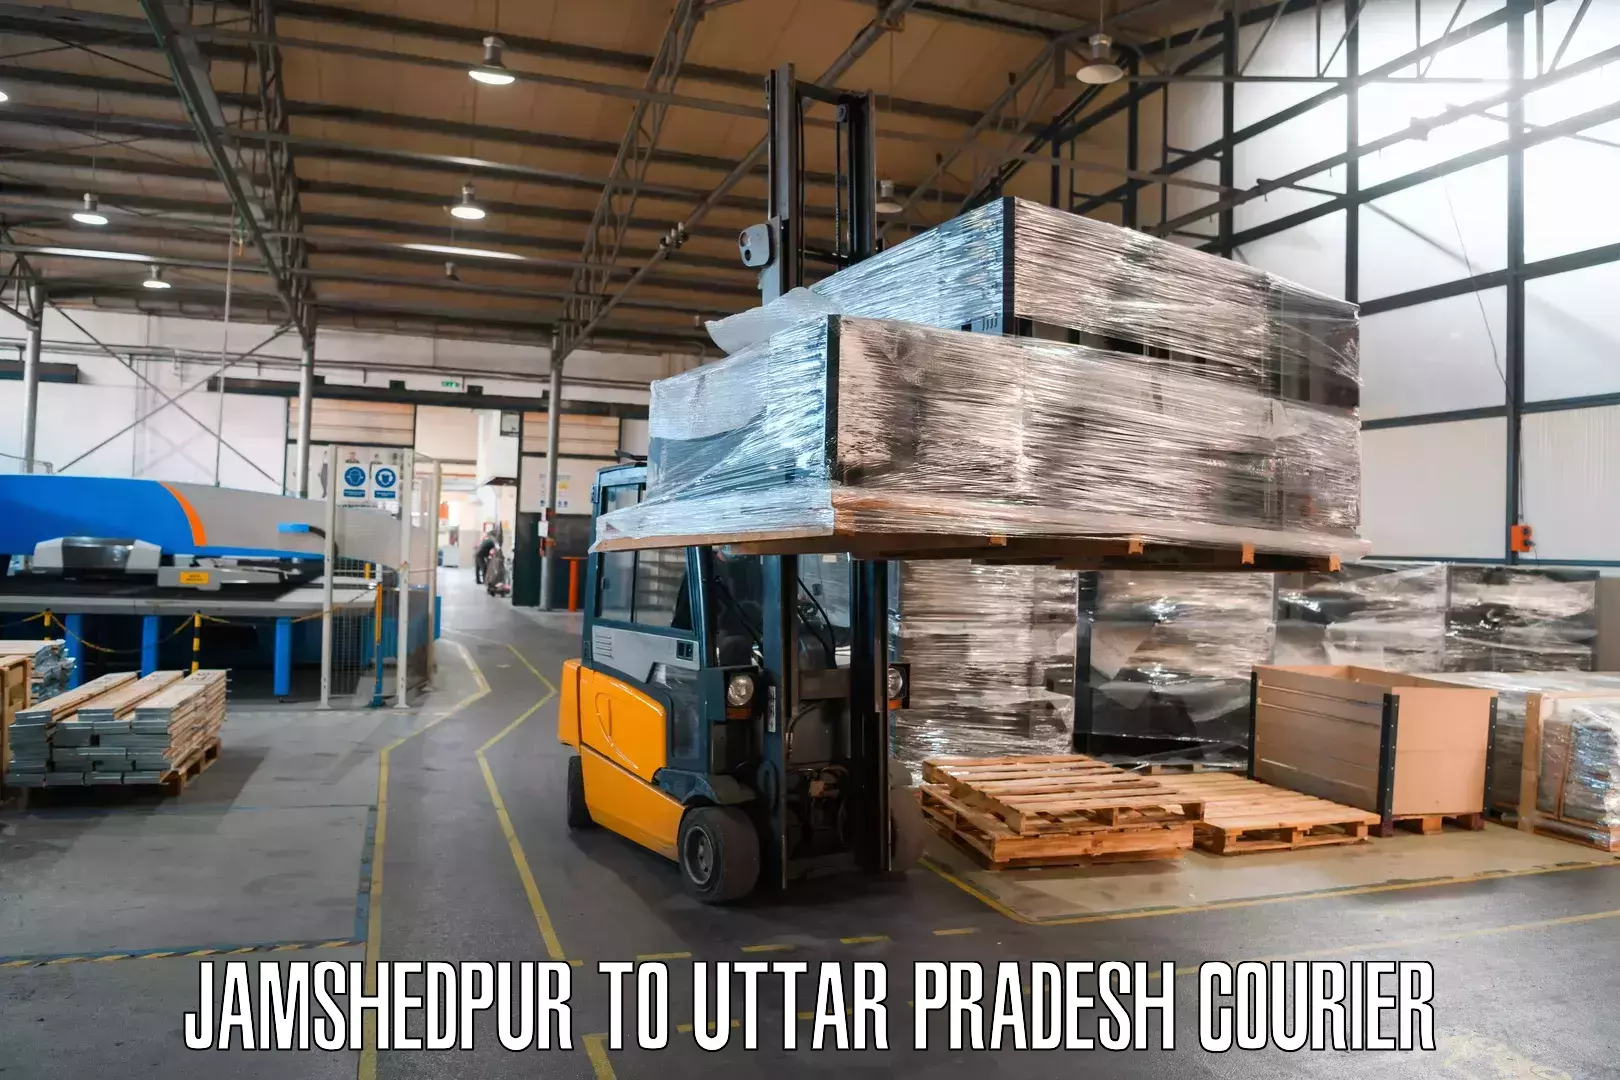 Customer-focused courier Jamshedpur to Meerut